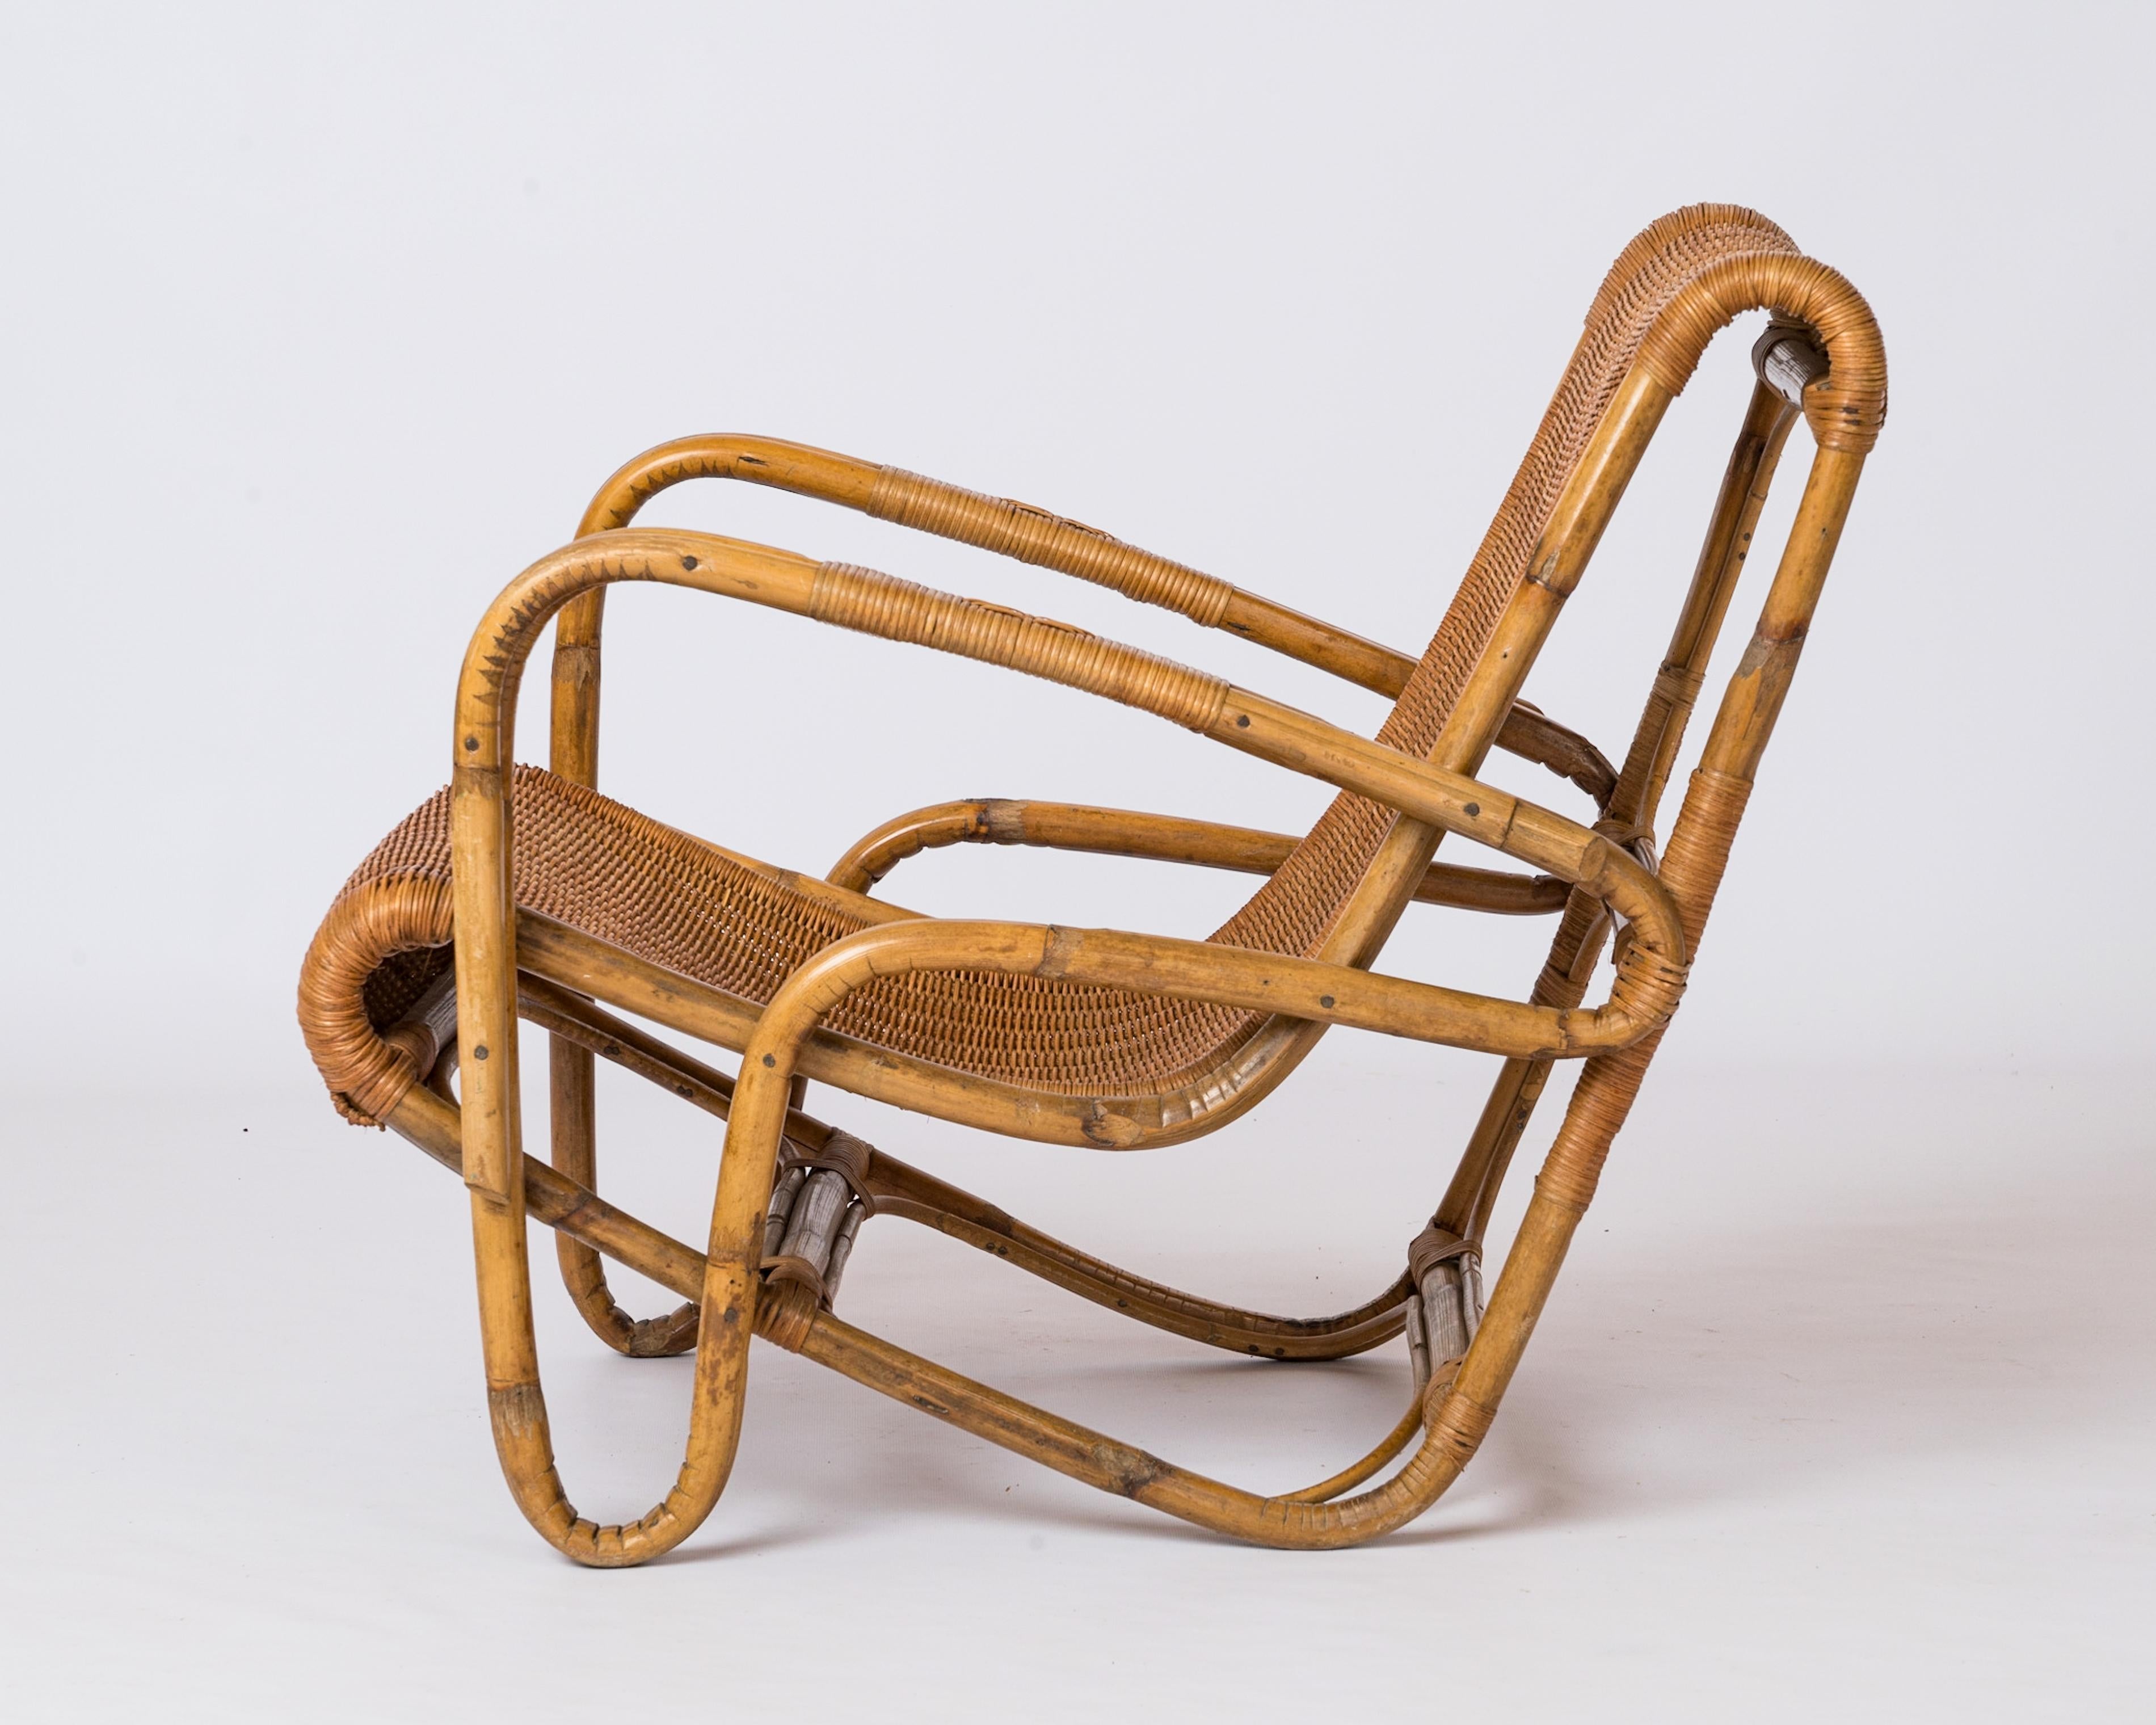 Einzigartiger Sessel mit umgekehrter Bumerangstruktur aus Rattan und Geflecht. Frankreich 1950er Jahre. Geflochtene Flechtdetails an der Armlehne. In gutem Vintage-Zustand. 
Dieser Stuhl wird von Frankreich aus versandt und kann entweder nach